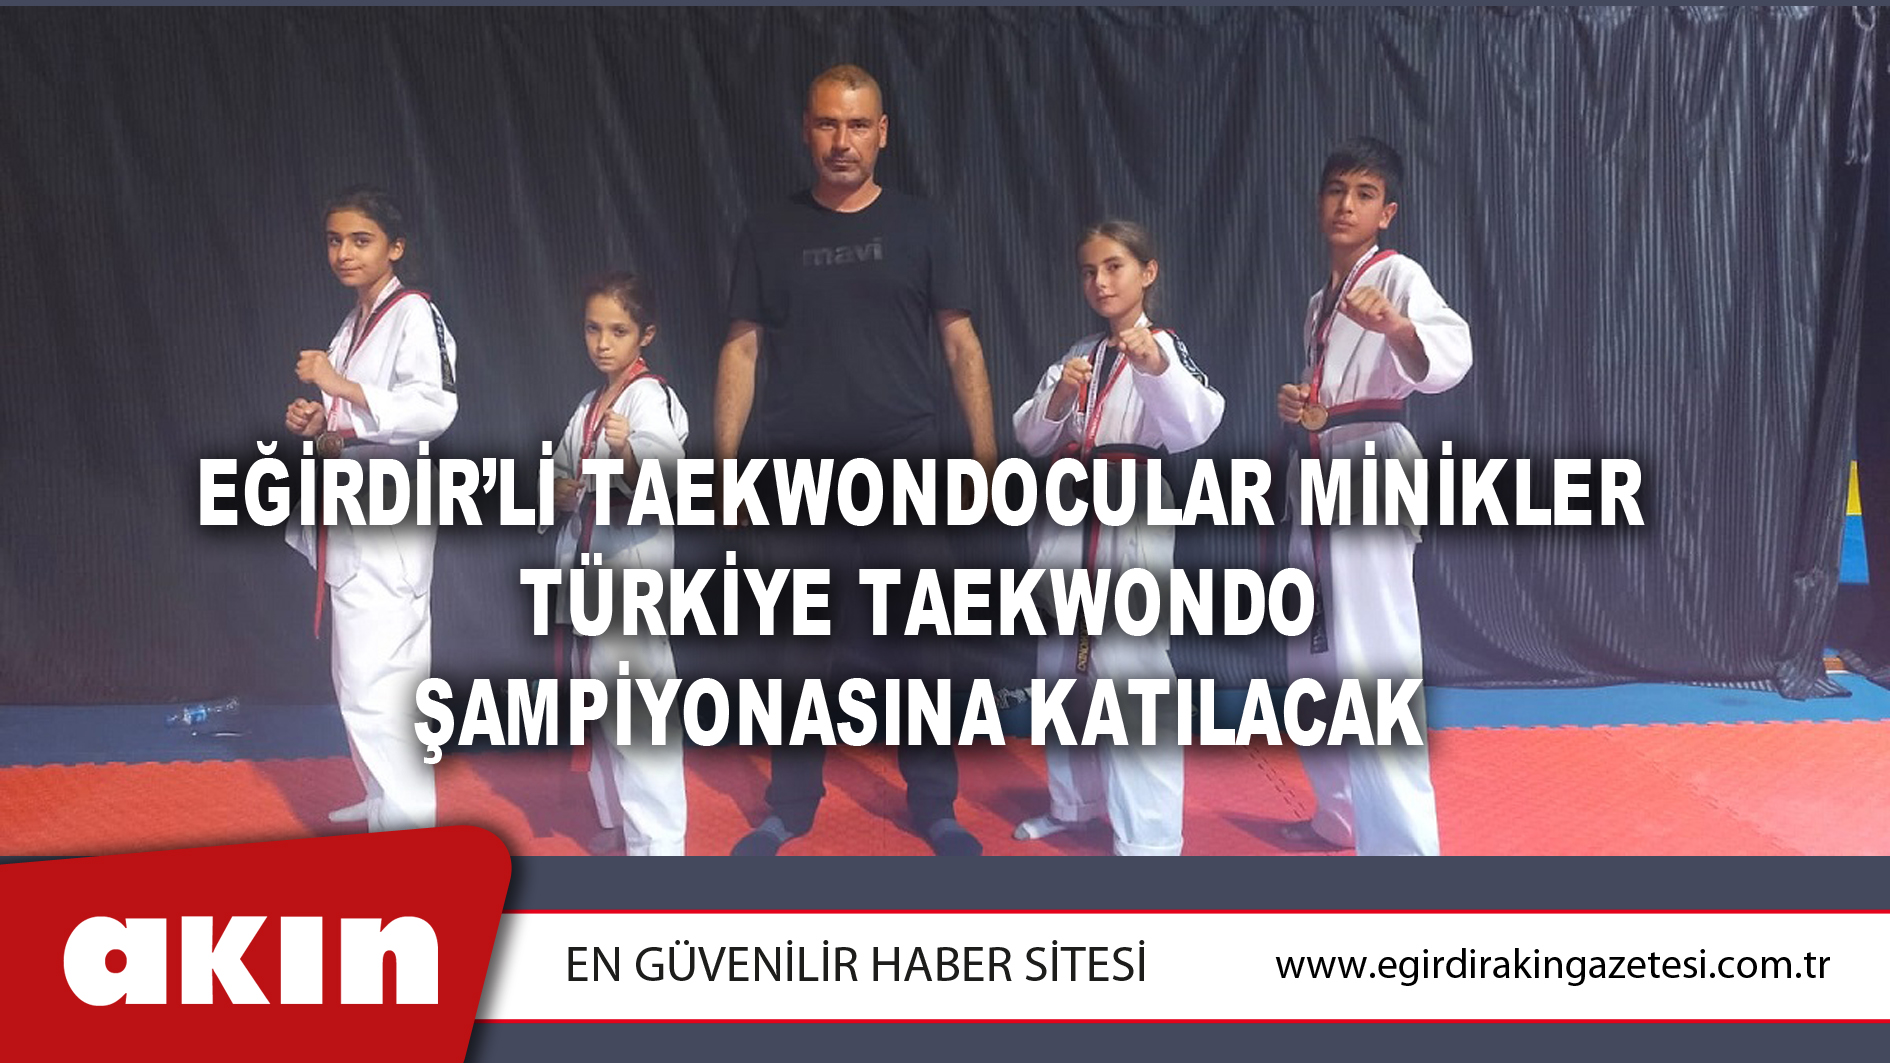 Eğirdir’li Taekwondocular Minikler Türkiye Taekwondo Şampiyonasına Katılacak